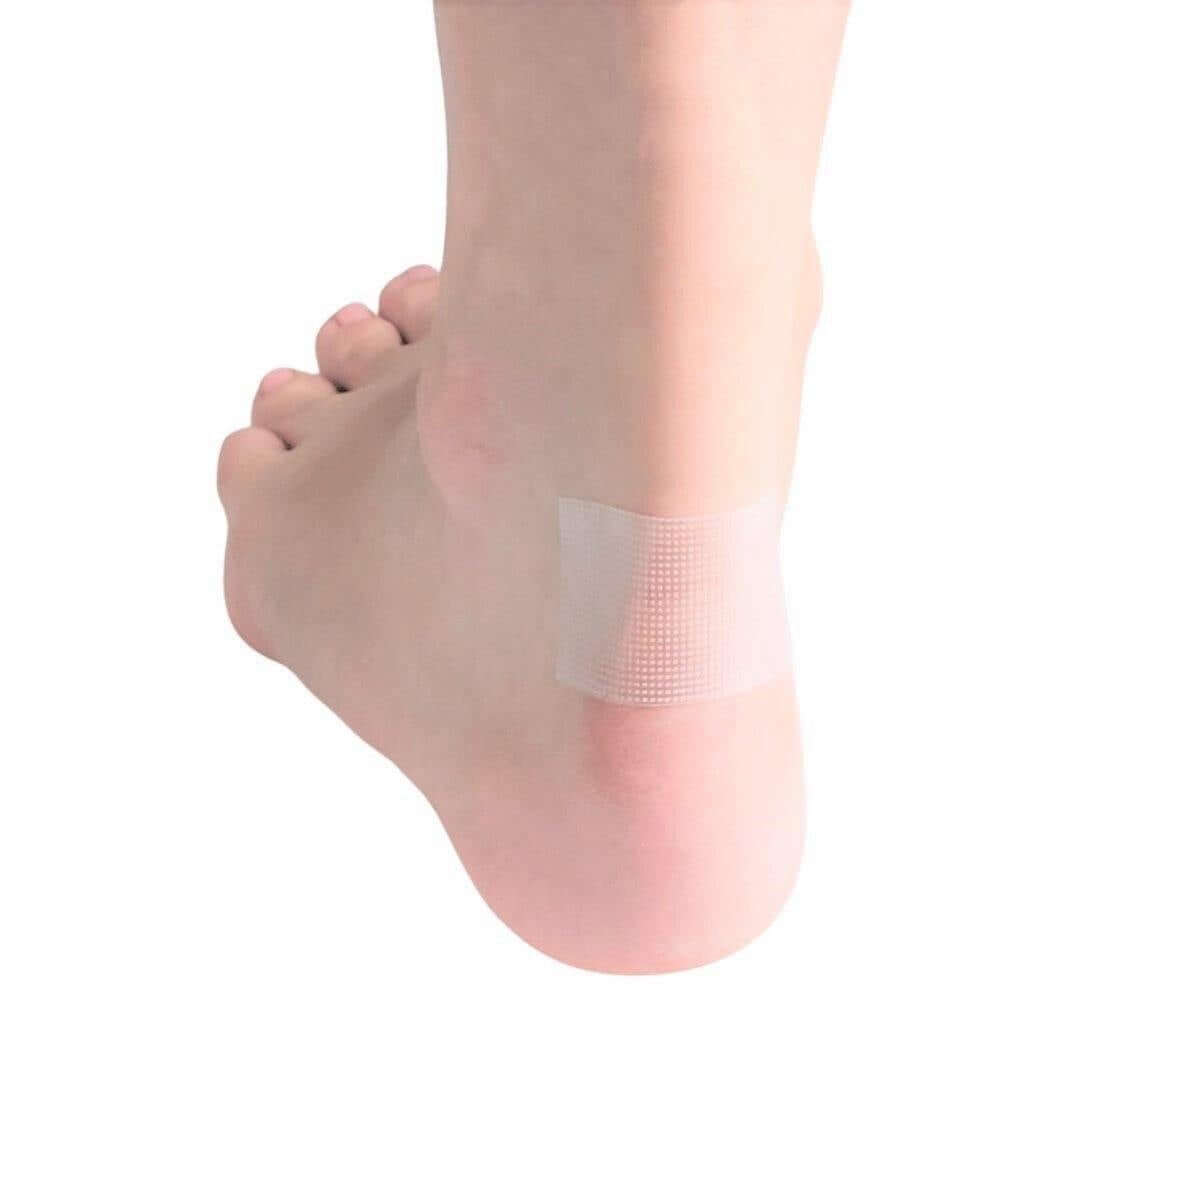 Køb ultratyndt vabellplaster billigt online hos Carerelief.dk. Bestil 1 rulle åndbart og blødt anti-slid plaster sart hud på til knyster, tæer, hæle og fingre her!